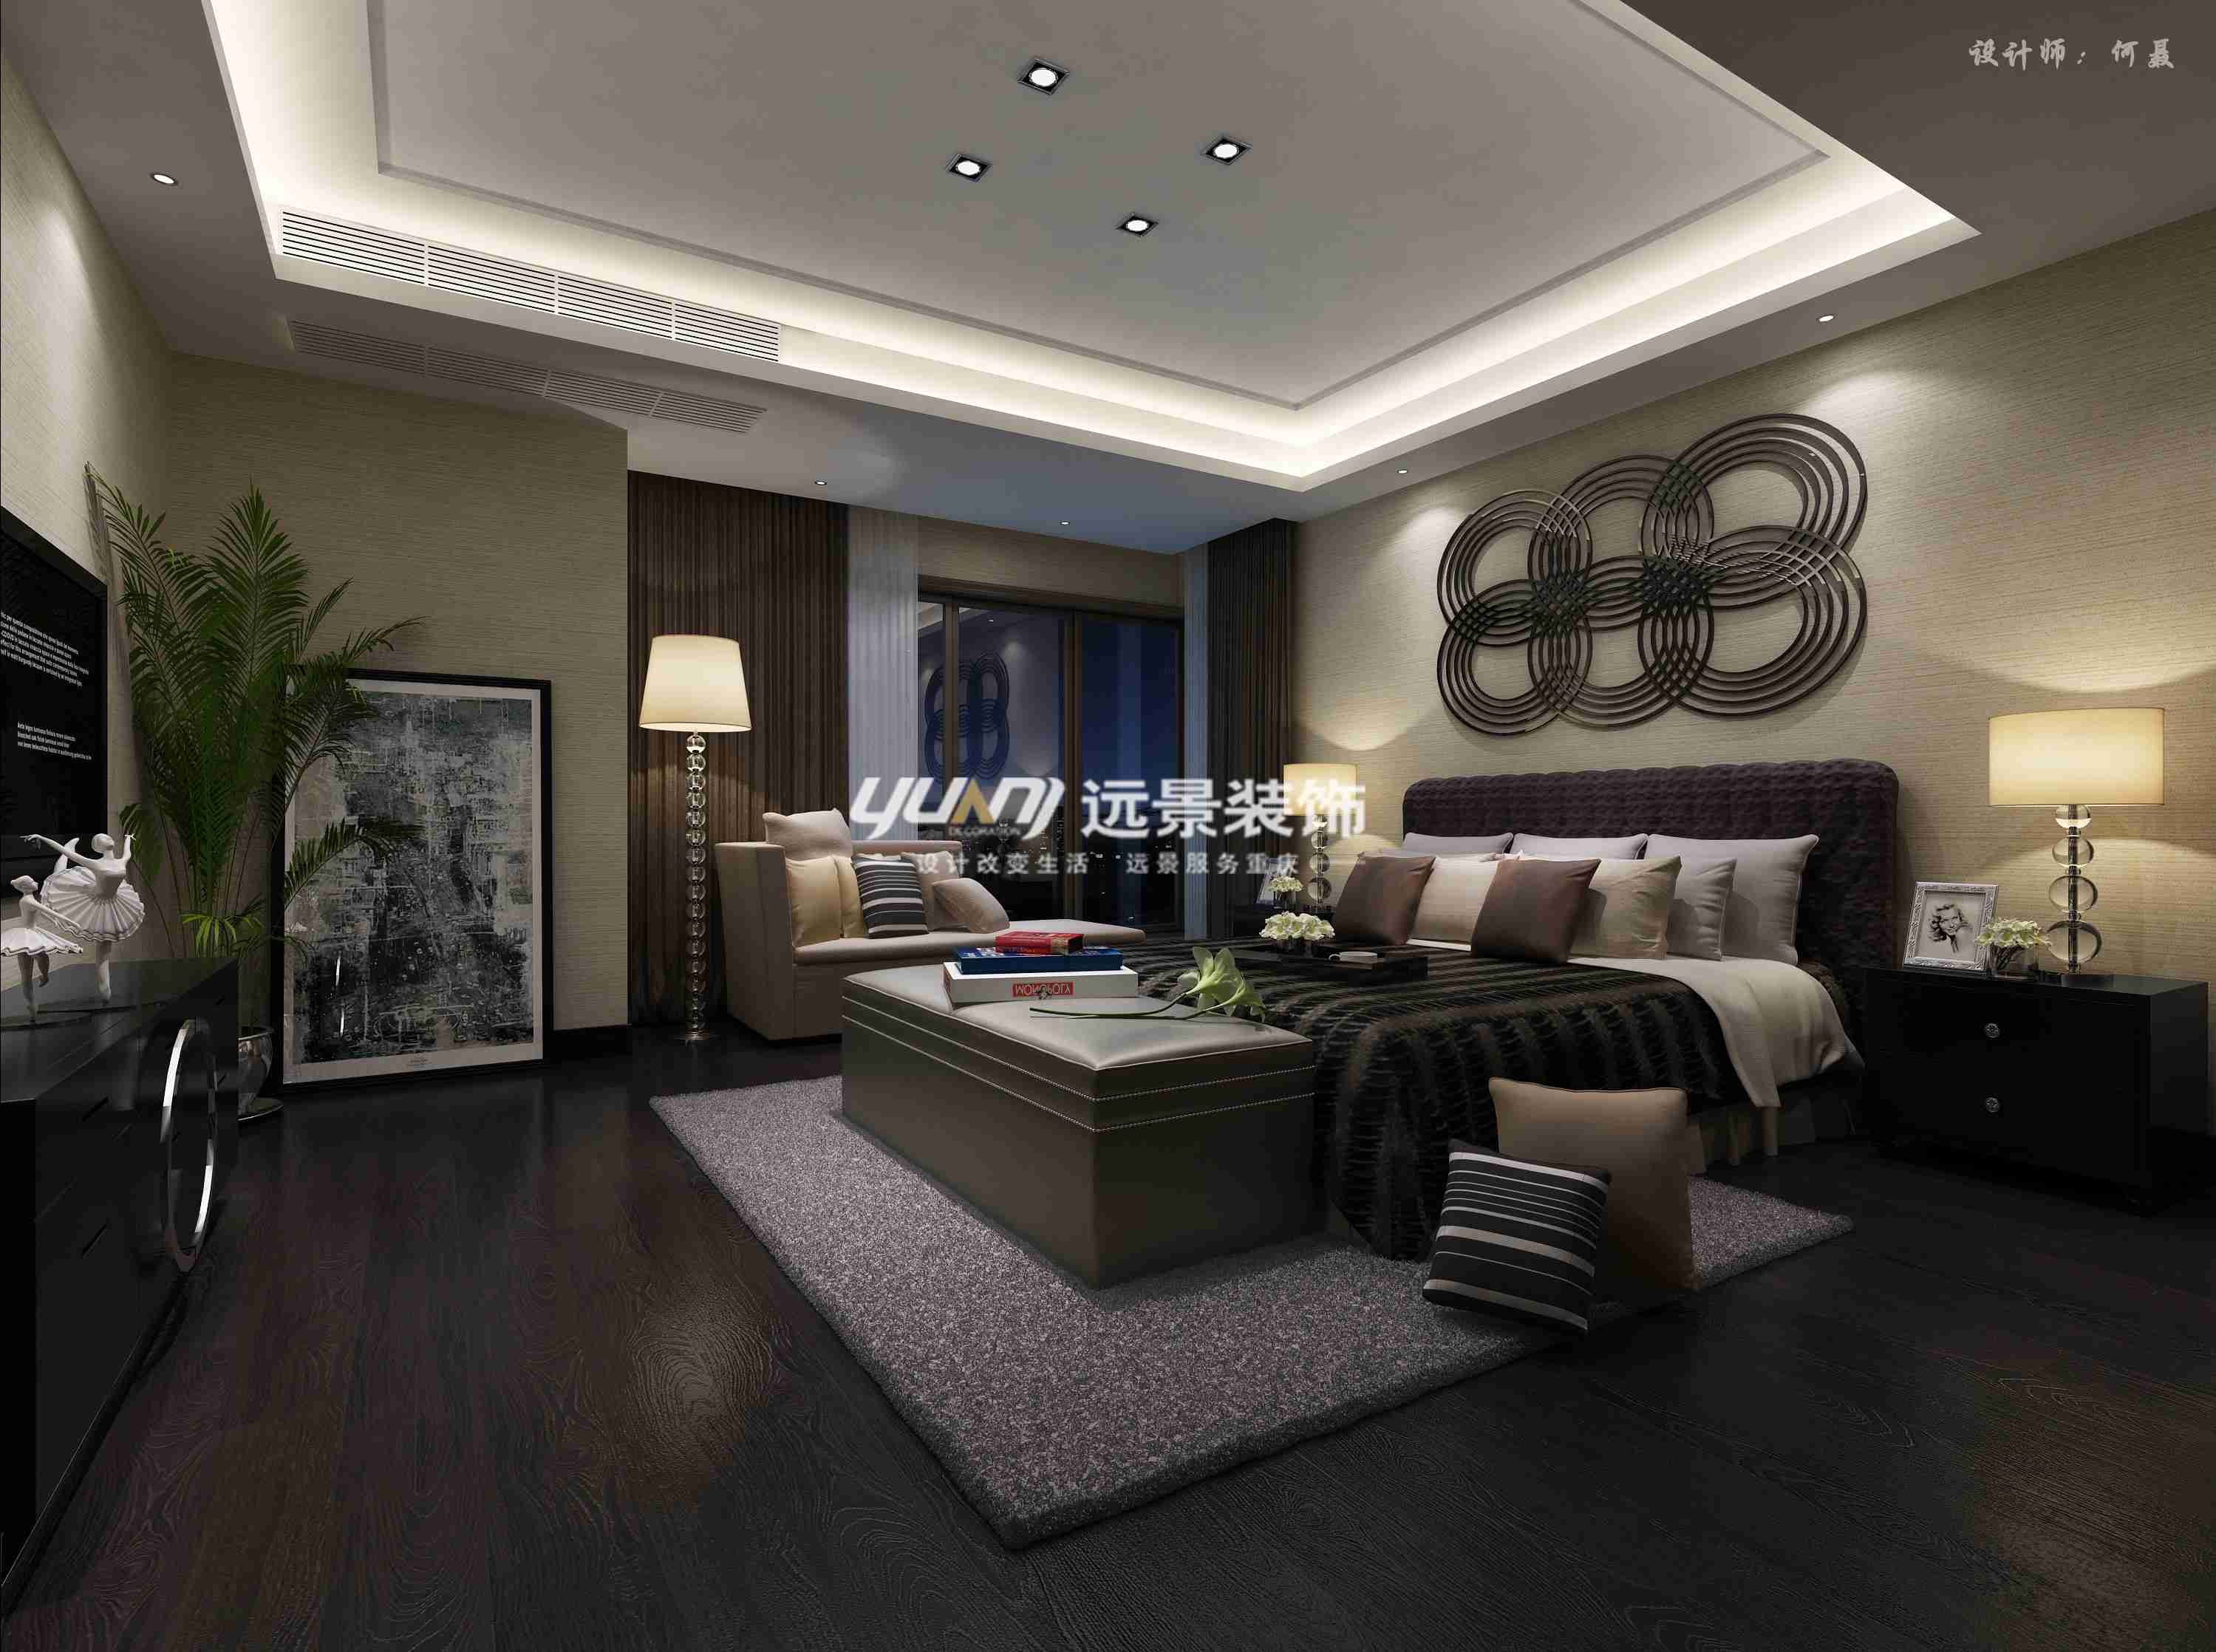 酒店风 简约 卧室图片来自重庆远景装饰_张其斌在酒店风装修风格效果图的分享